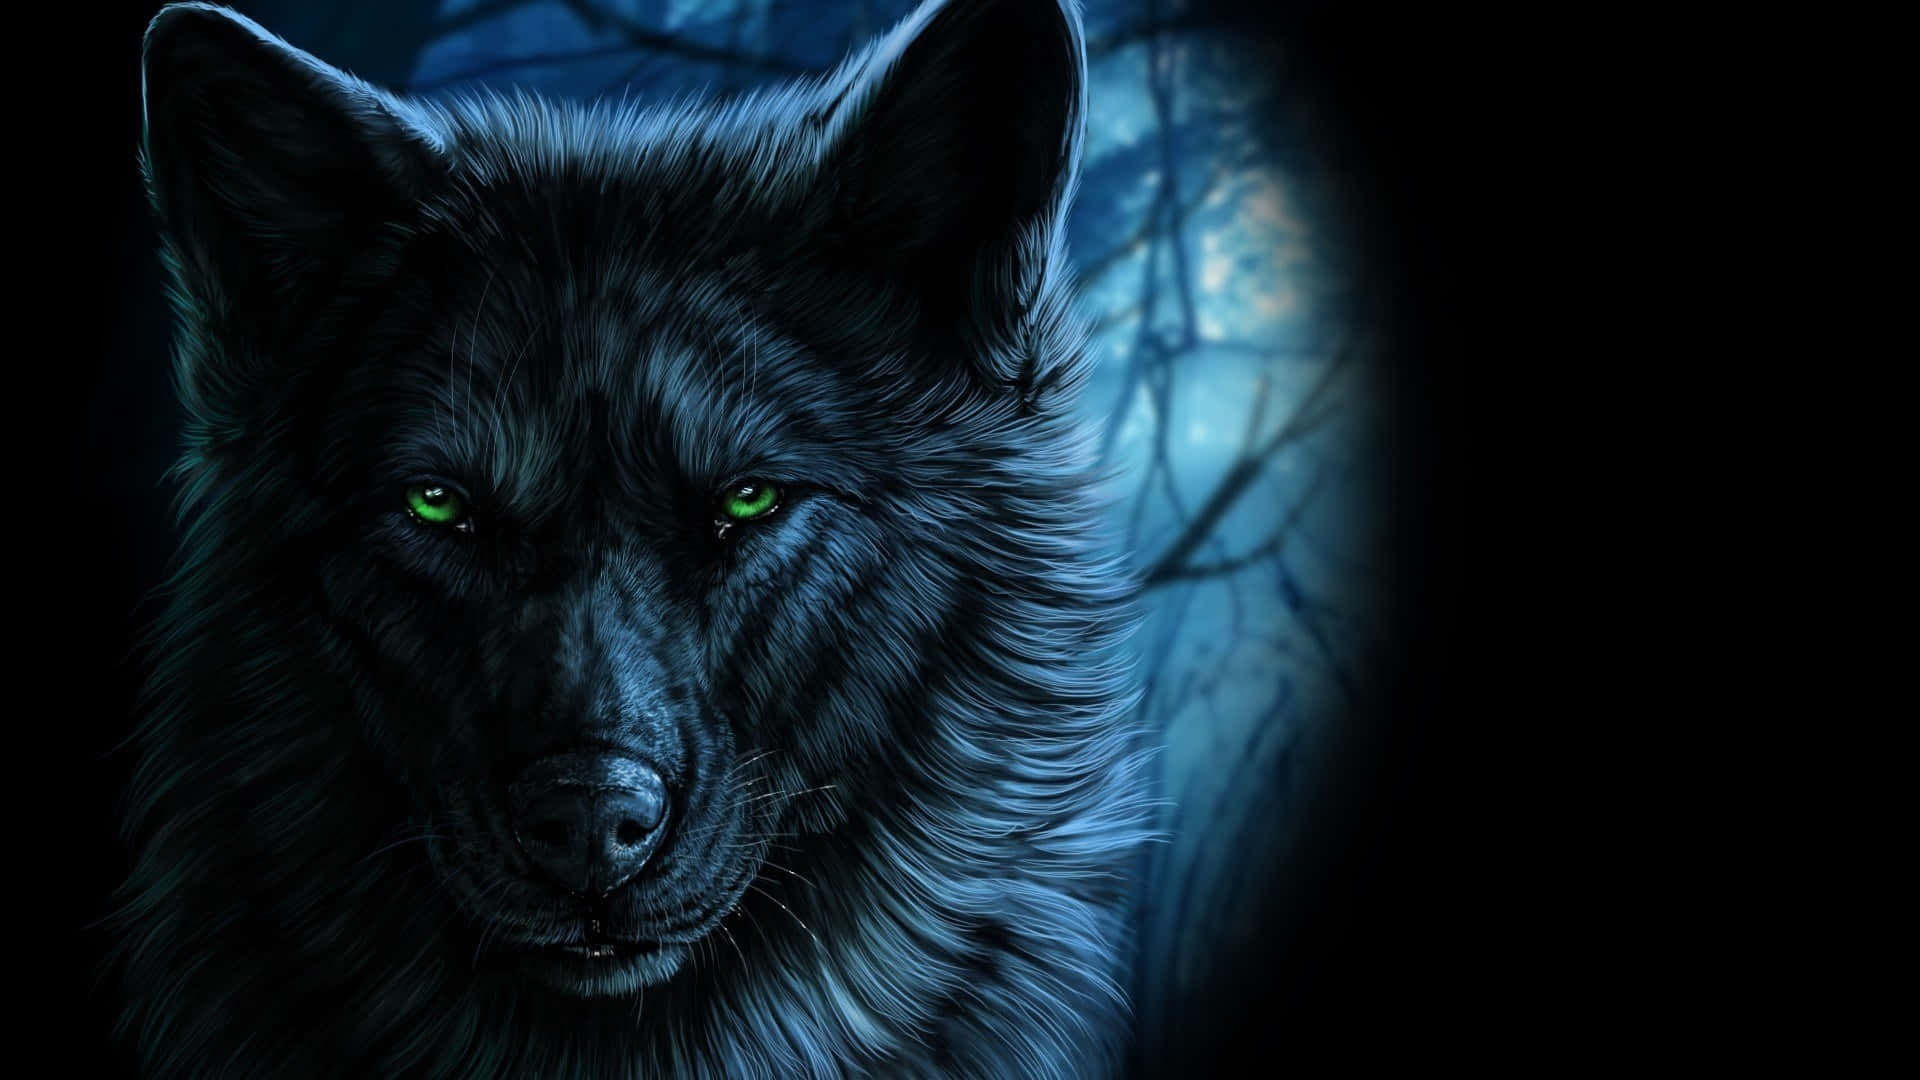 Mächtigerwolf, Der In Der Nacht Heult.